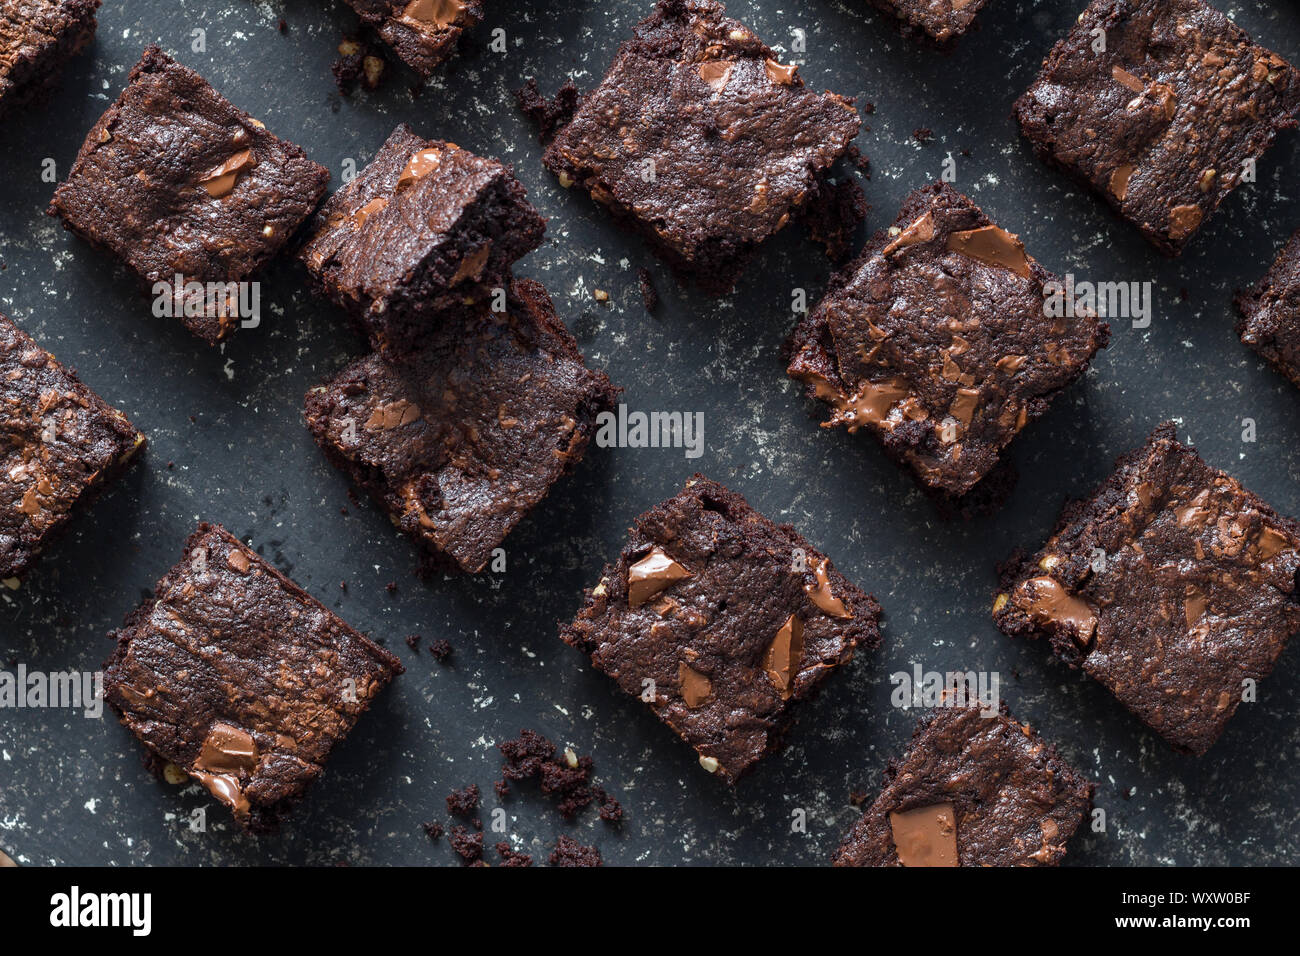 Gebackene Chocolate Brownie Quadrate auf meliert grau Hintergrund Textur - Blick von oben auf die Brownies mit geschmolzener Schokolade Bits Stockfoto